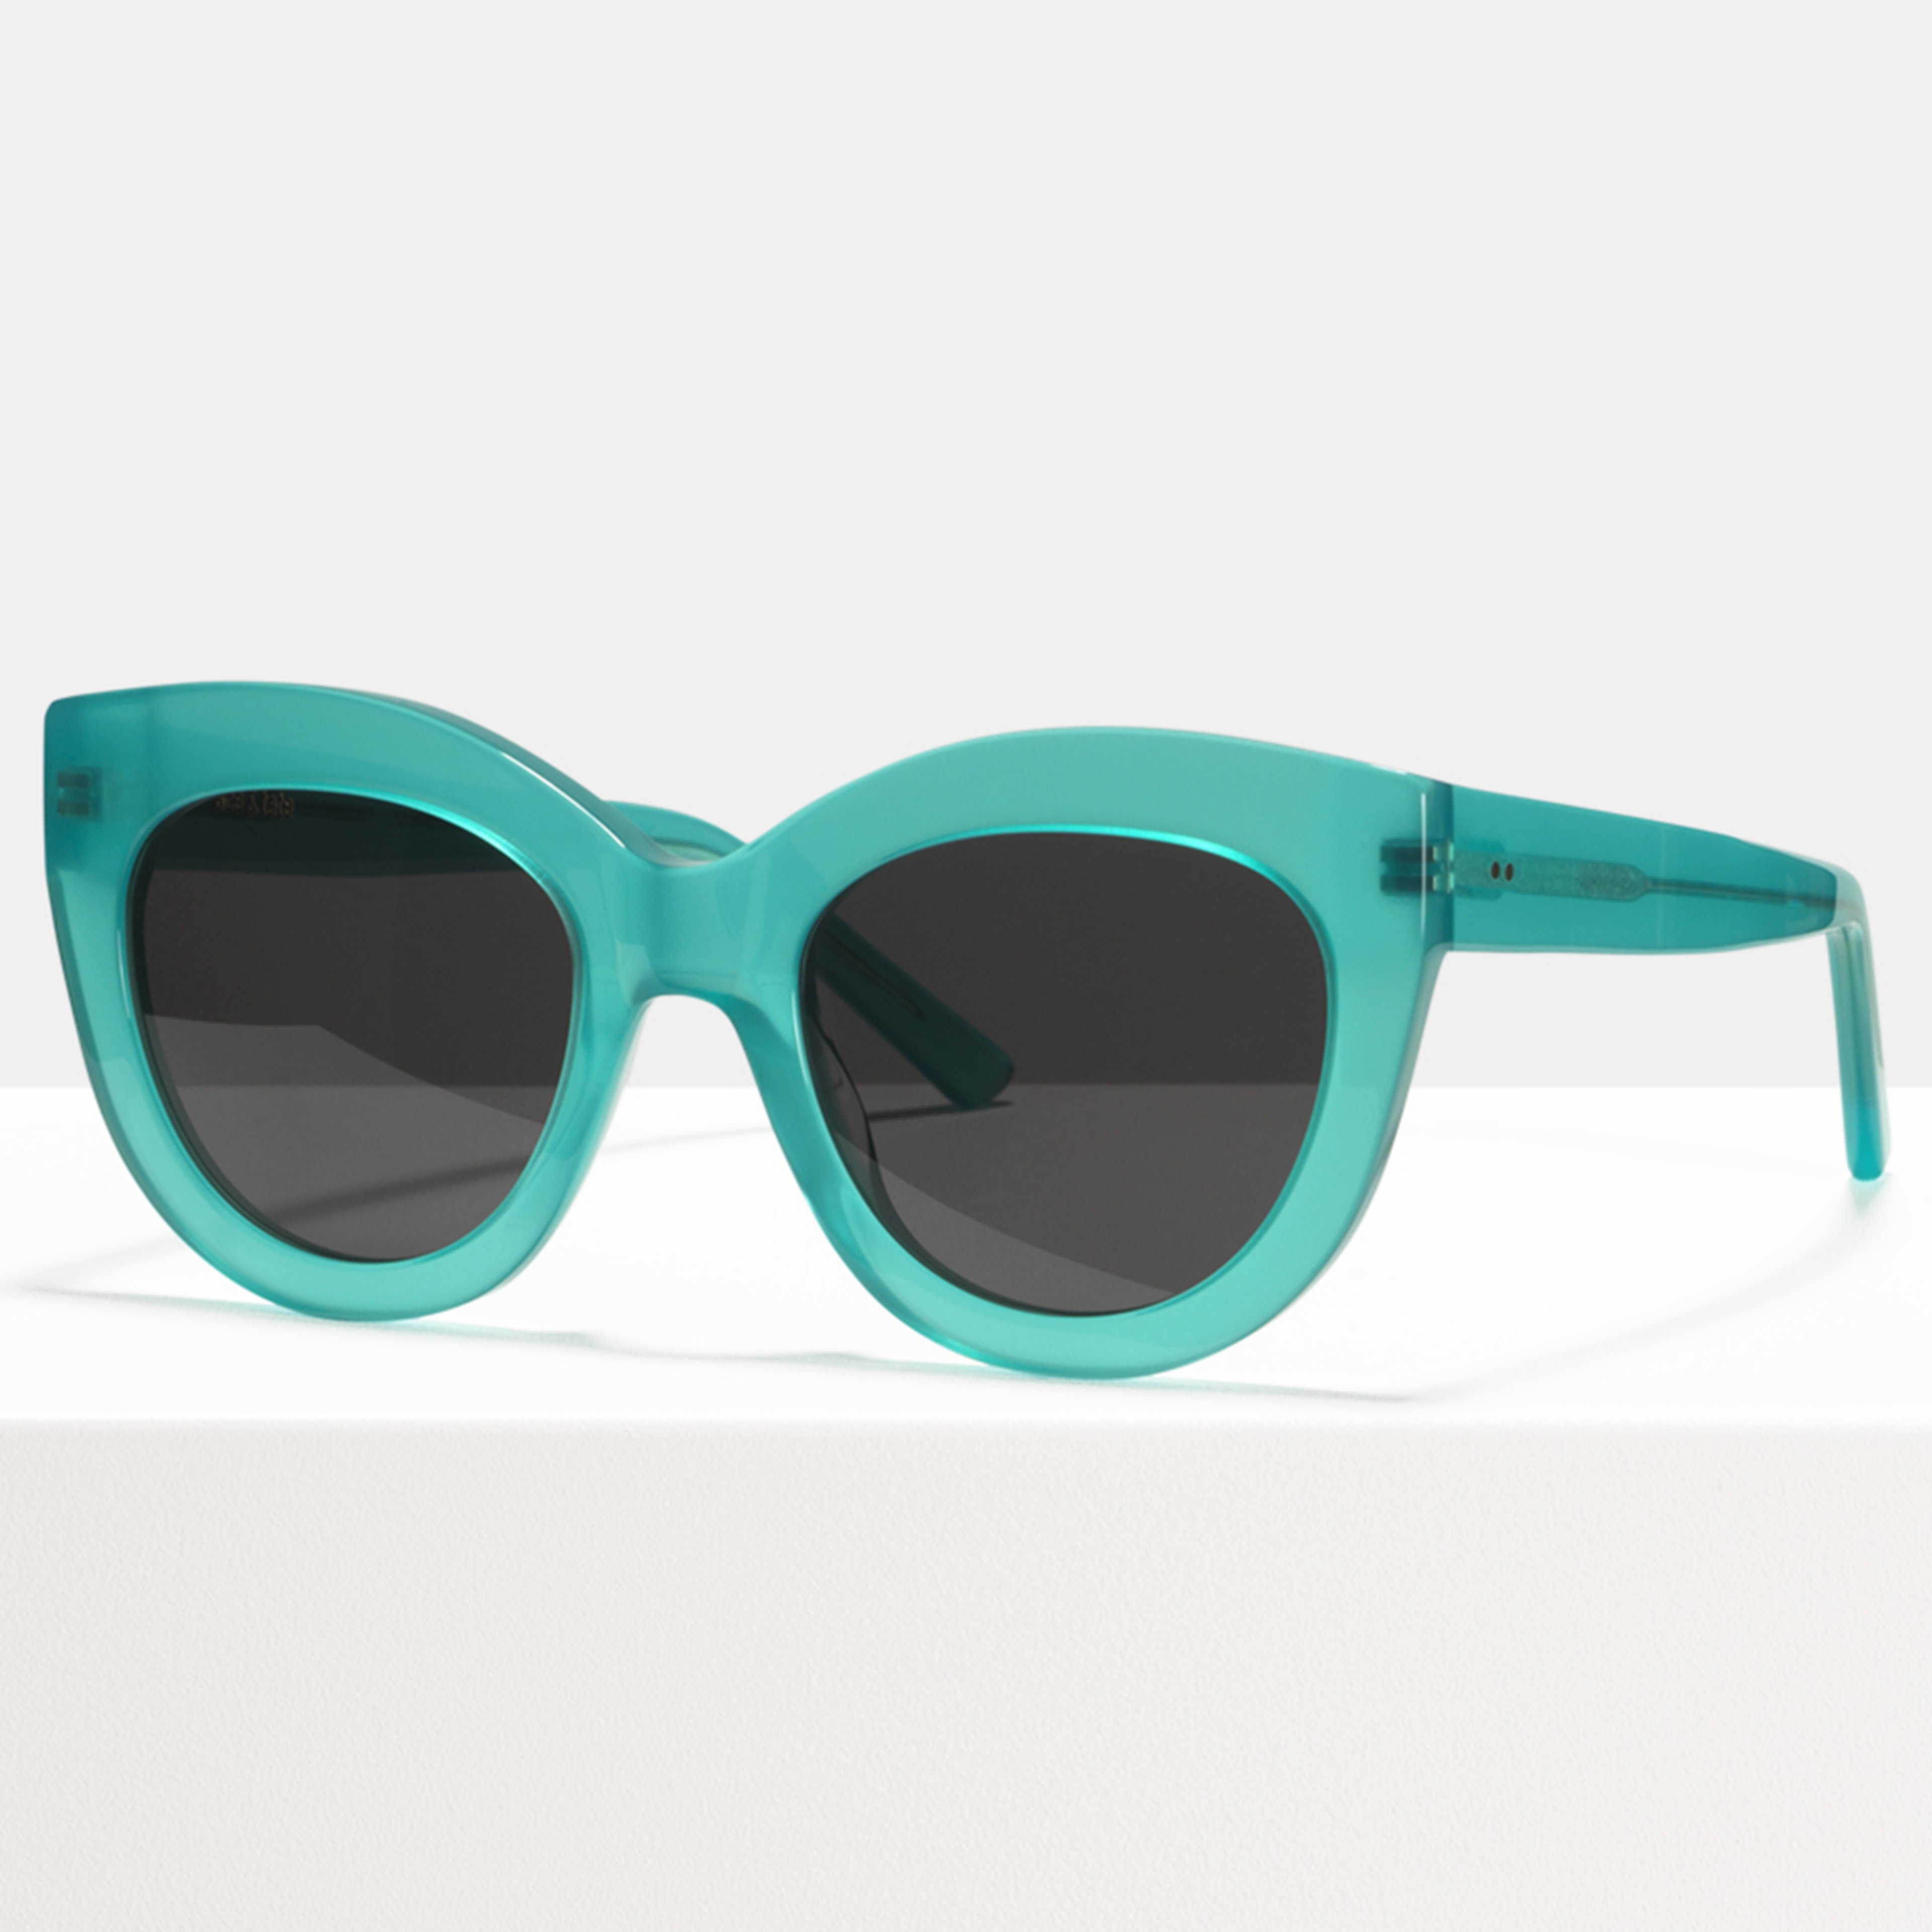 Ace & Tate Sunglasses |  Acetate in Blue, Green